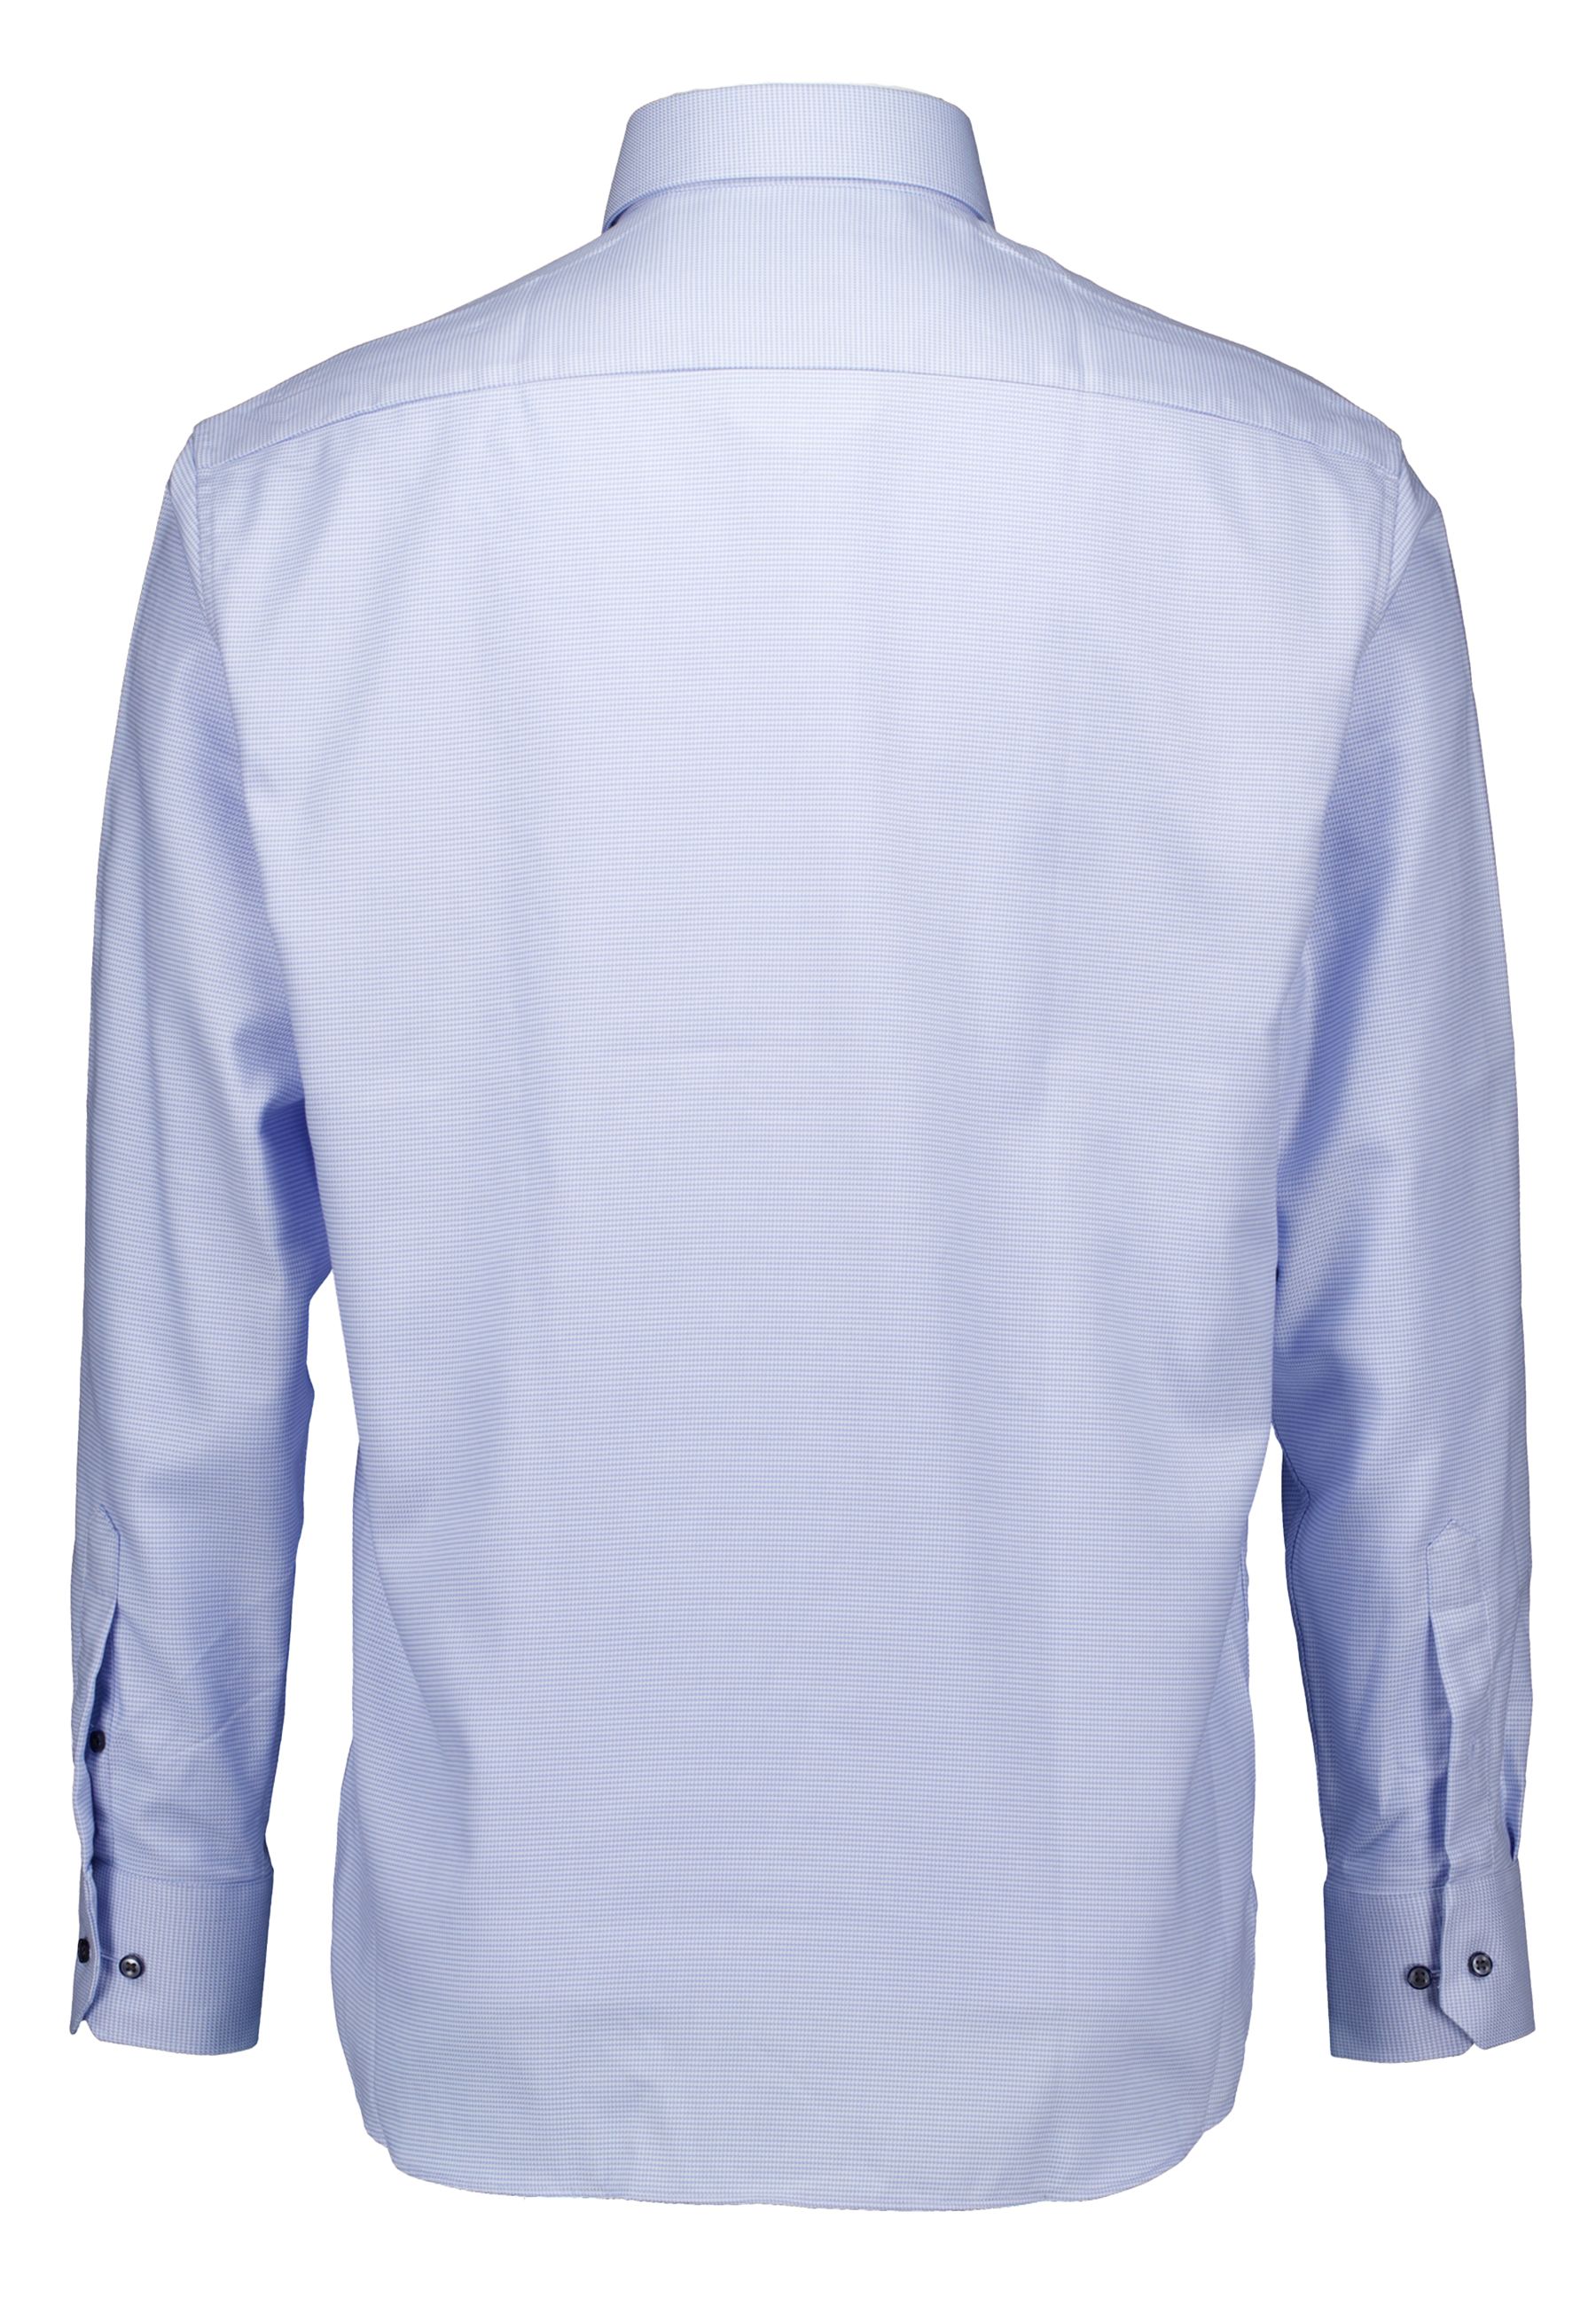 Lange Mouw Overhemden Lichtblauw 4158 X19k